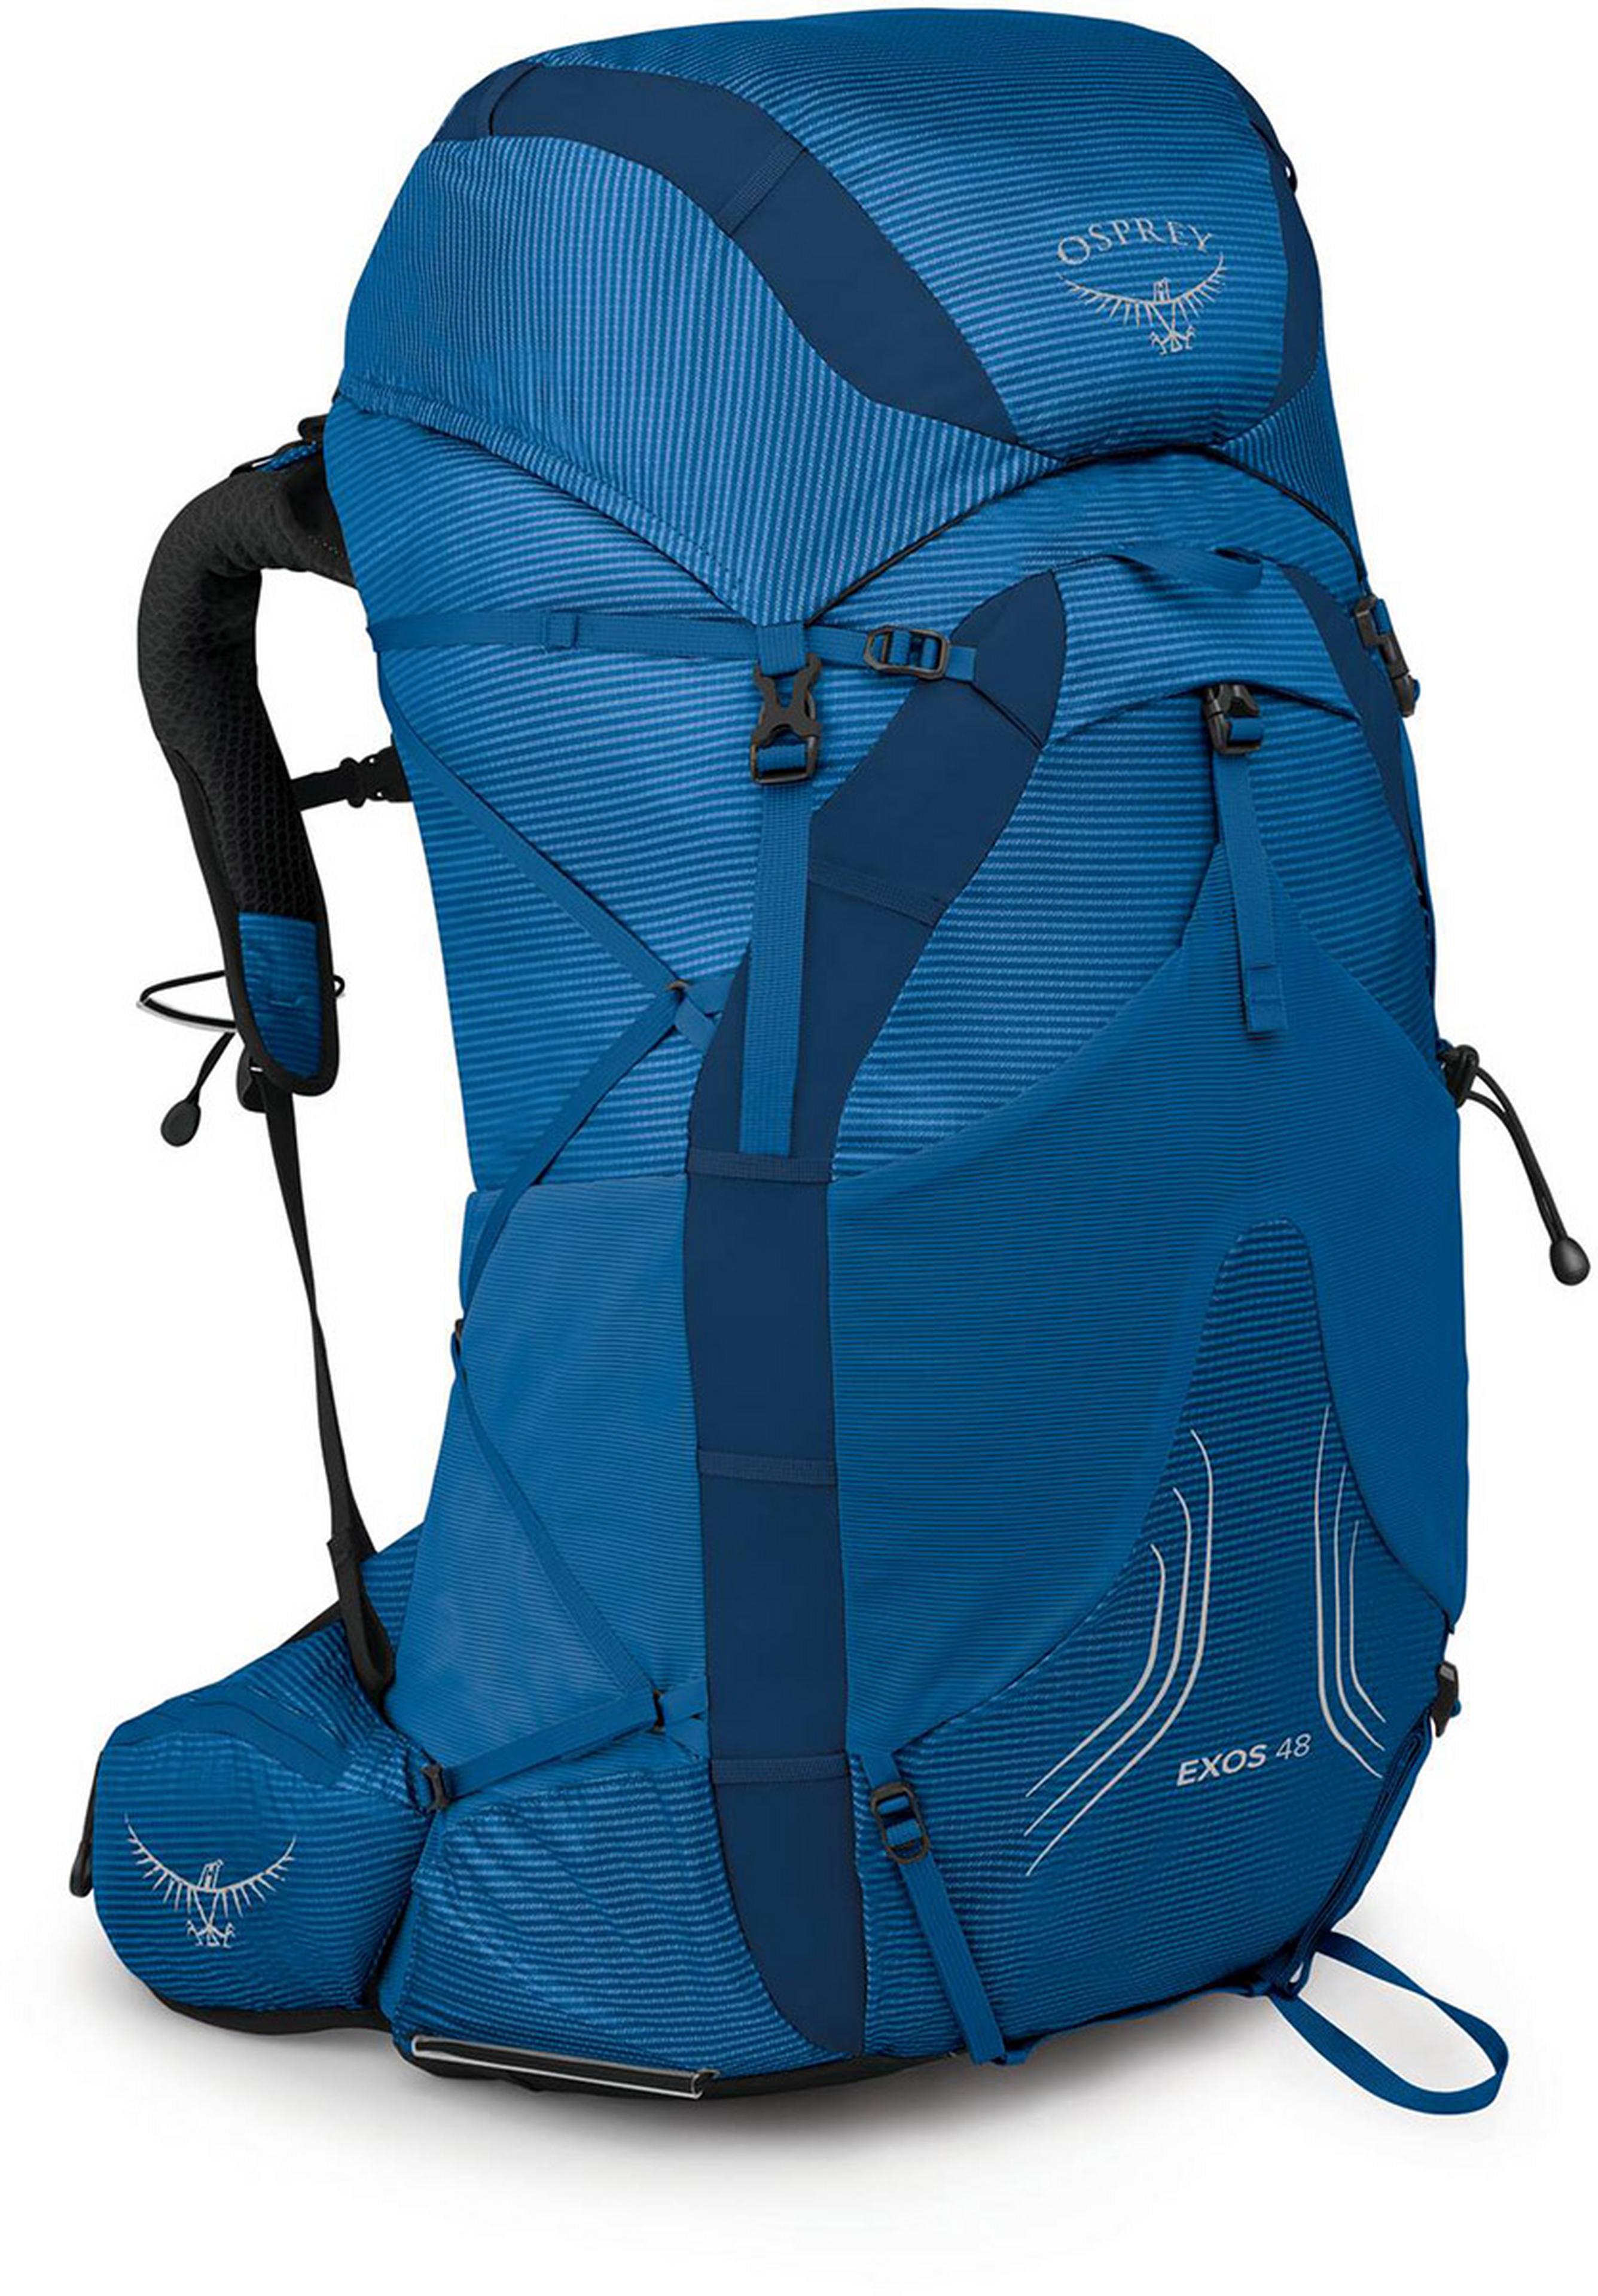 Osprey Exos 48 Hiking Backpack